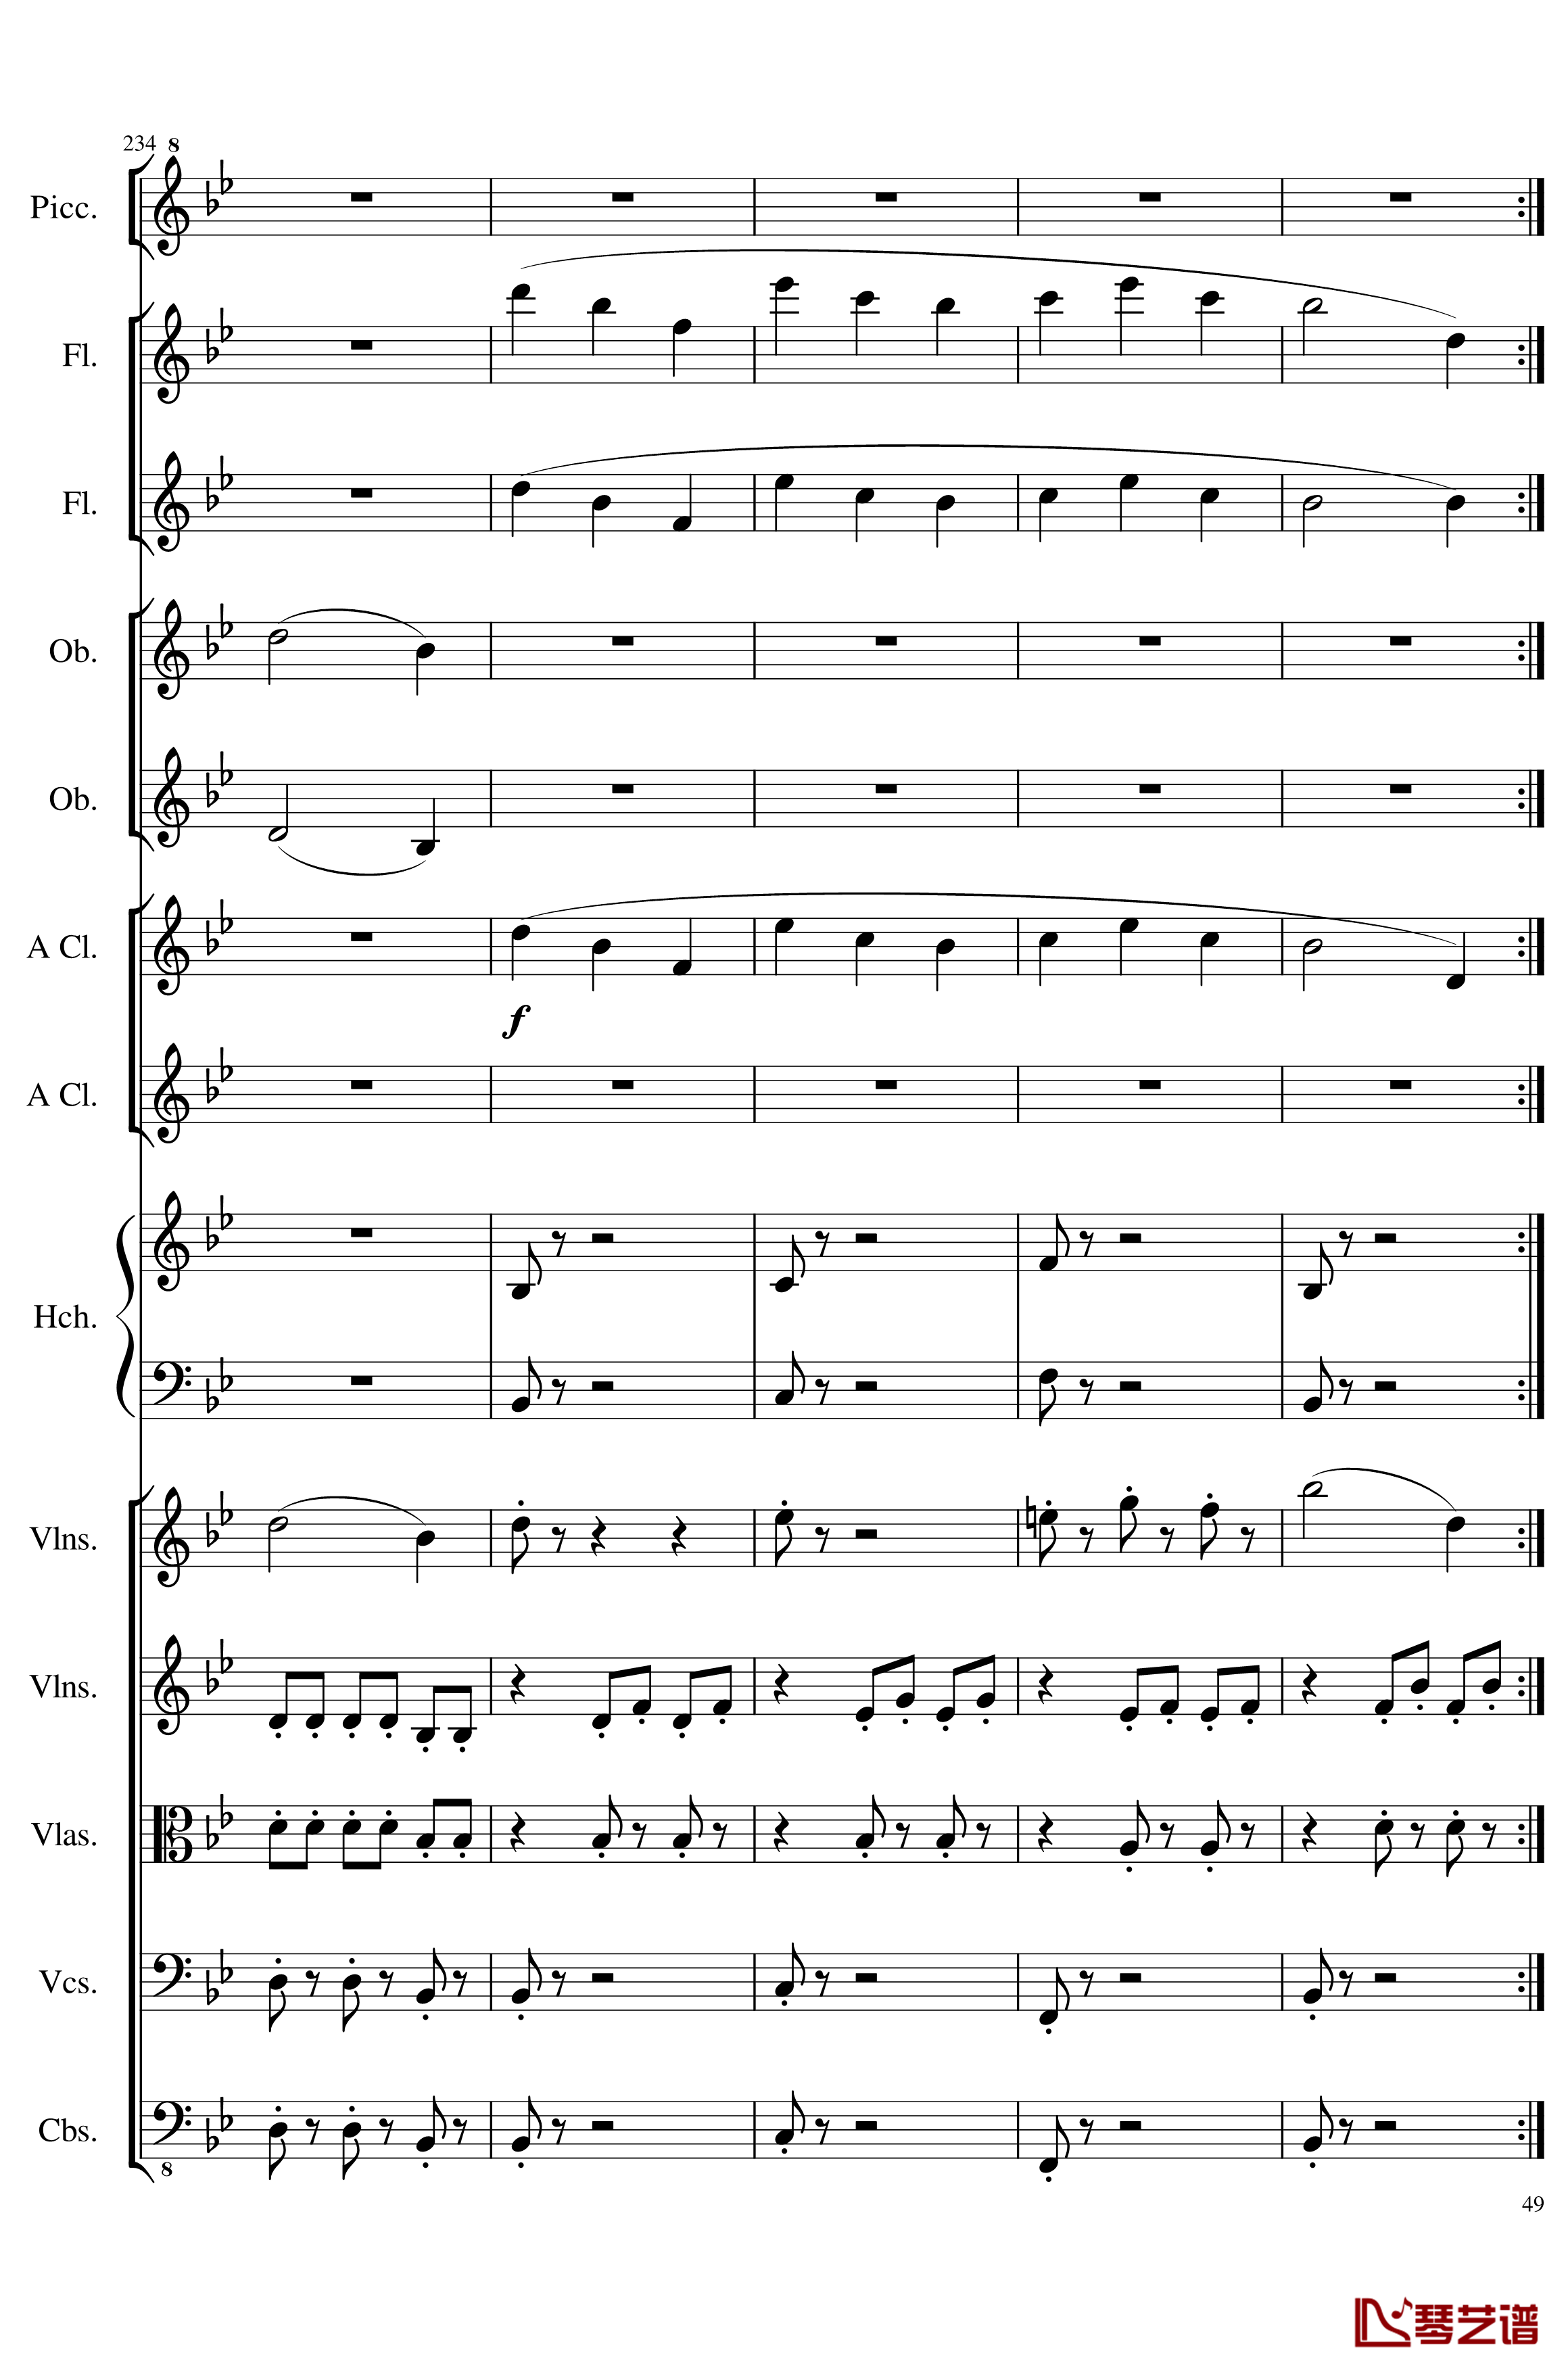 7 Contredanses No.1-7, Op.124钢琴谱-7首乡村舞曲，第一至第七，作品124-一个球49